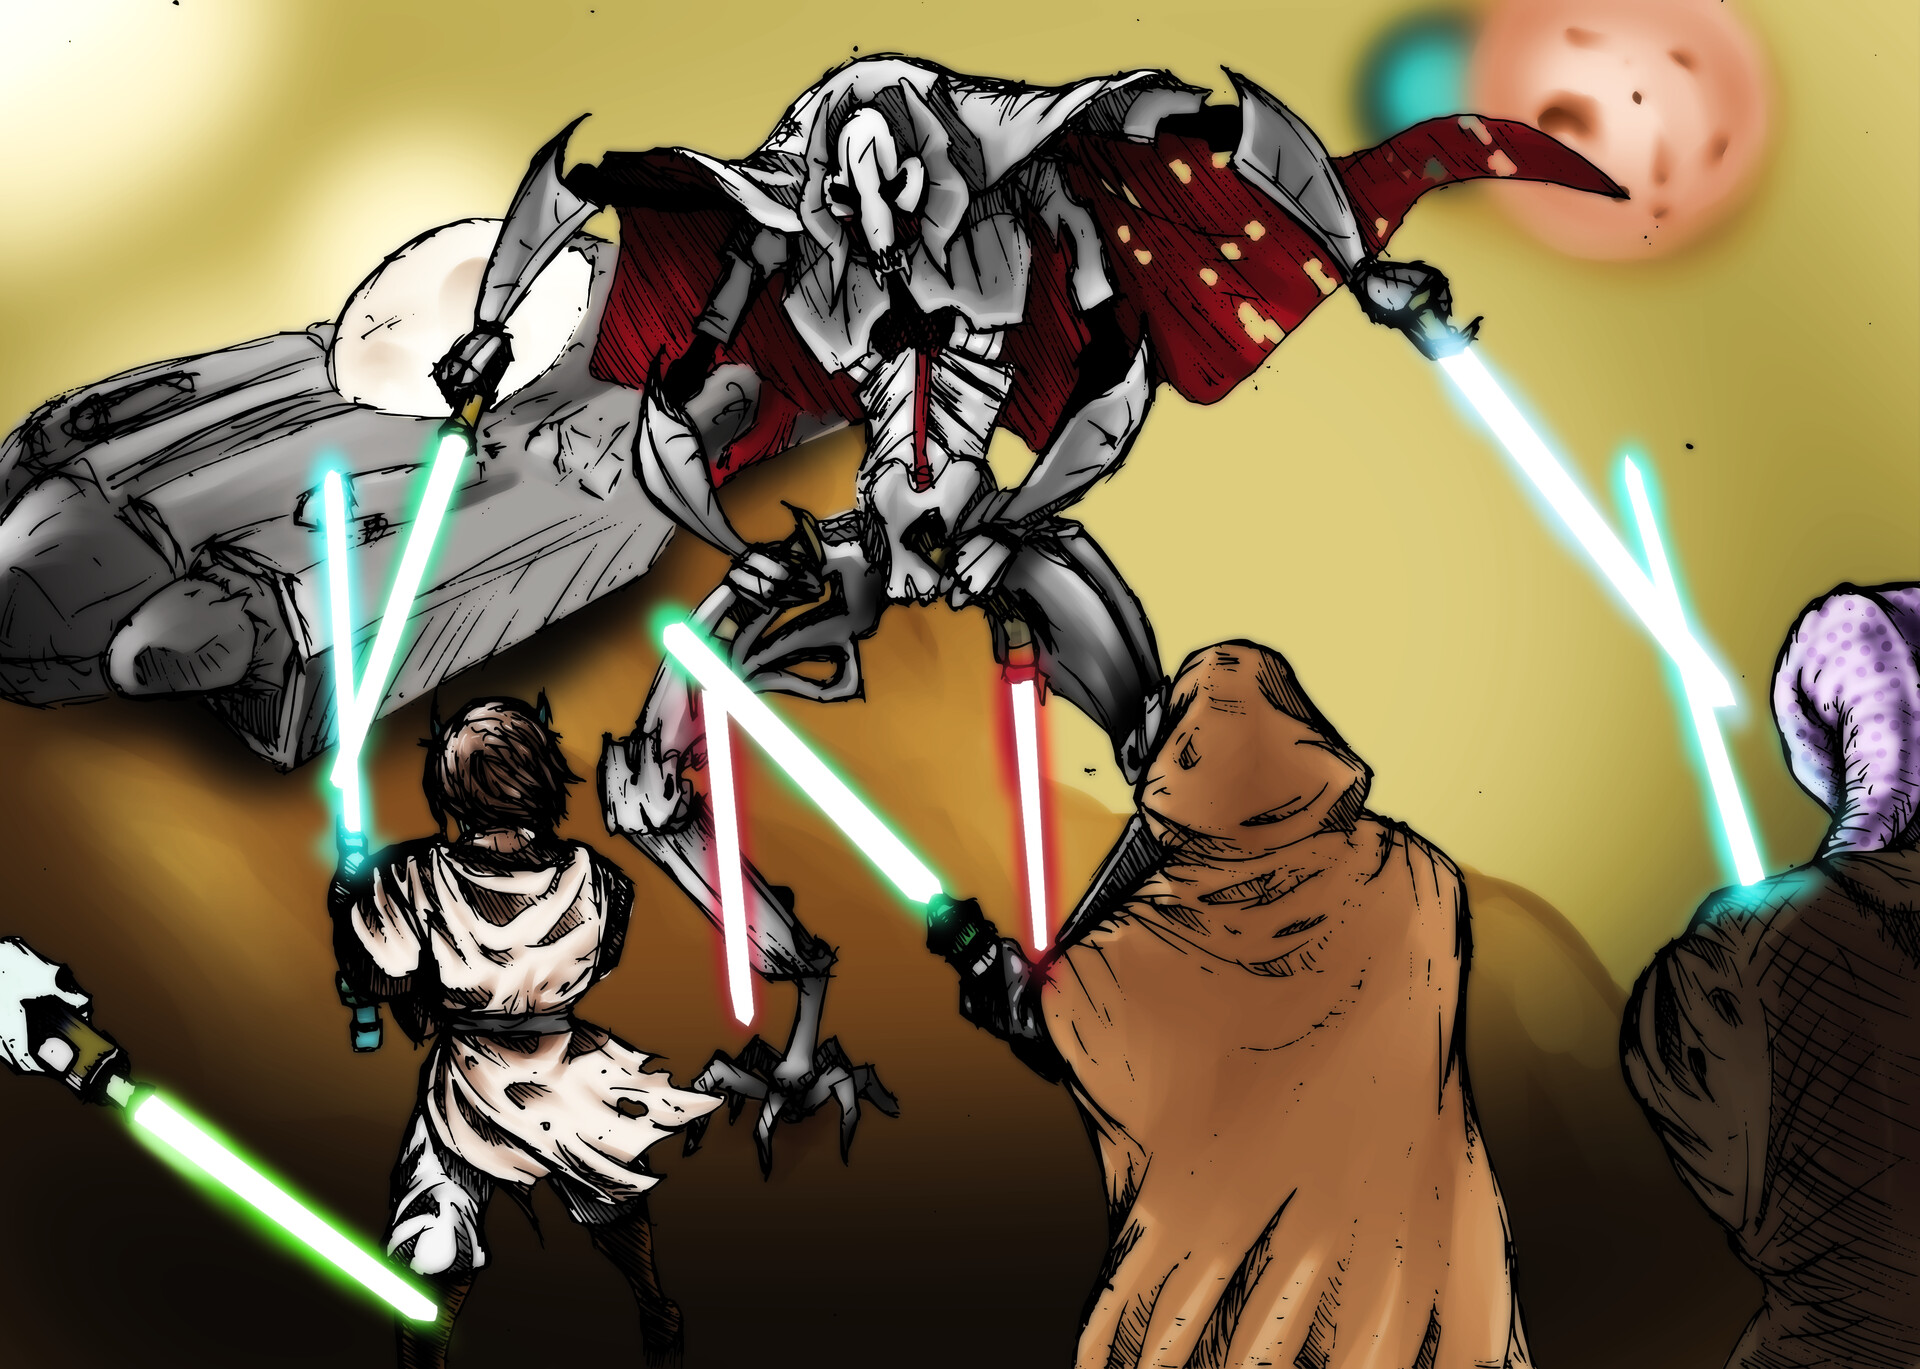 ArtStation - General Grievous vs Jedis Star Wars fan art